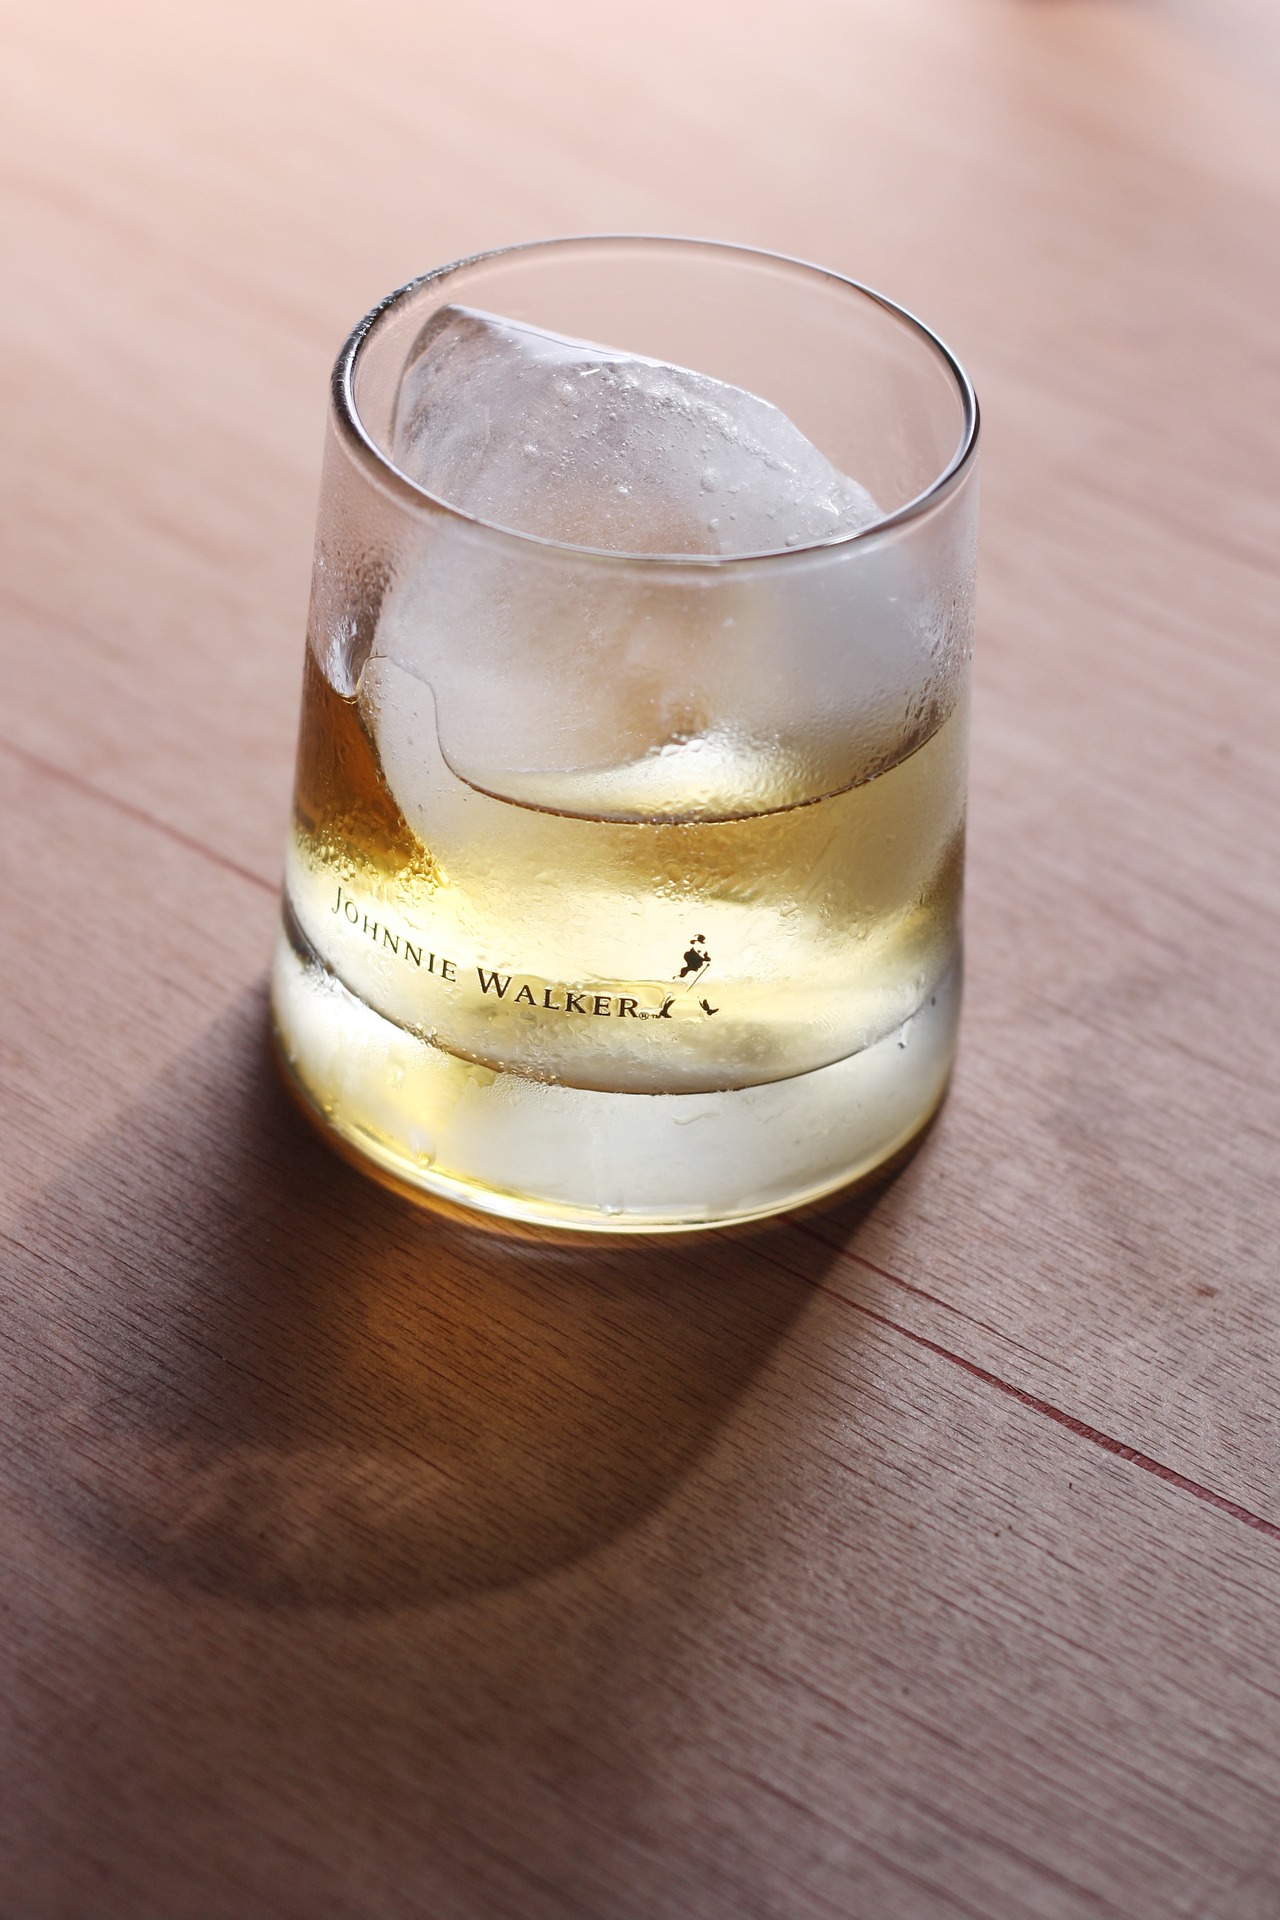 Whisky White Walker by Johnnie Walker Whisky Scottish Blended